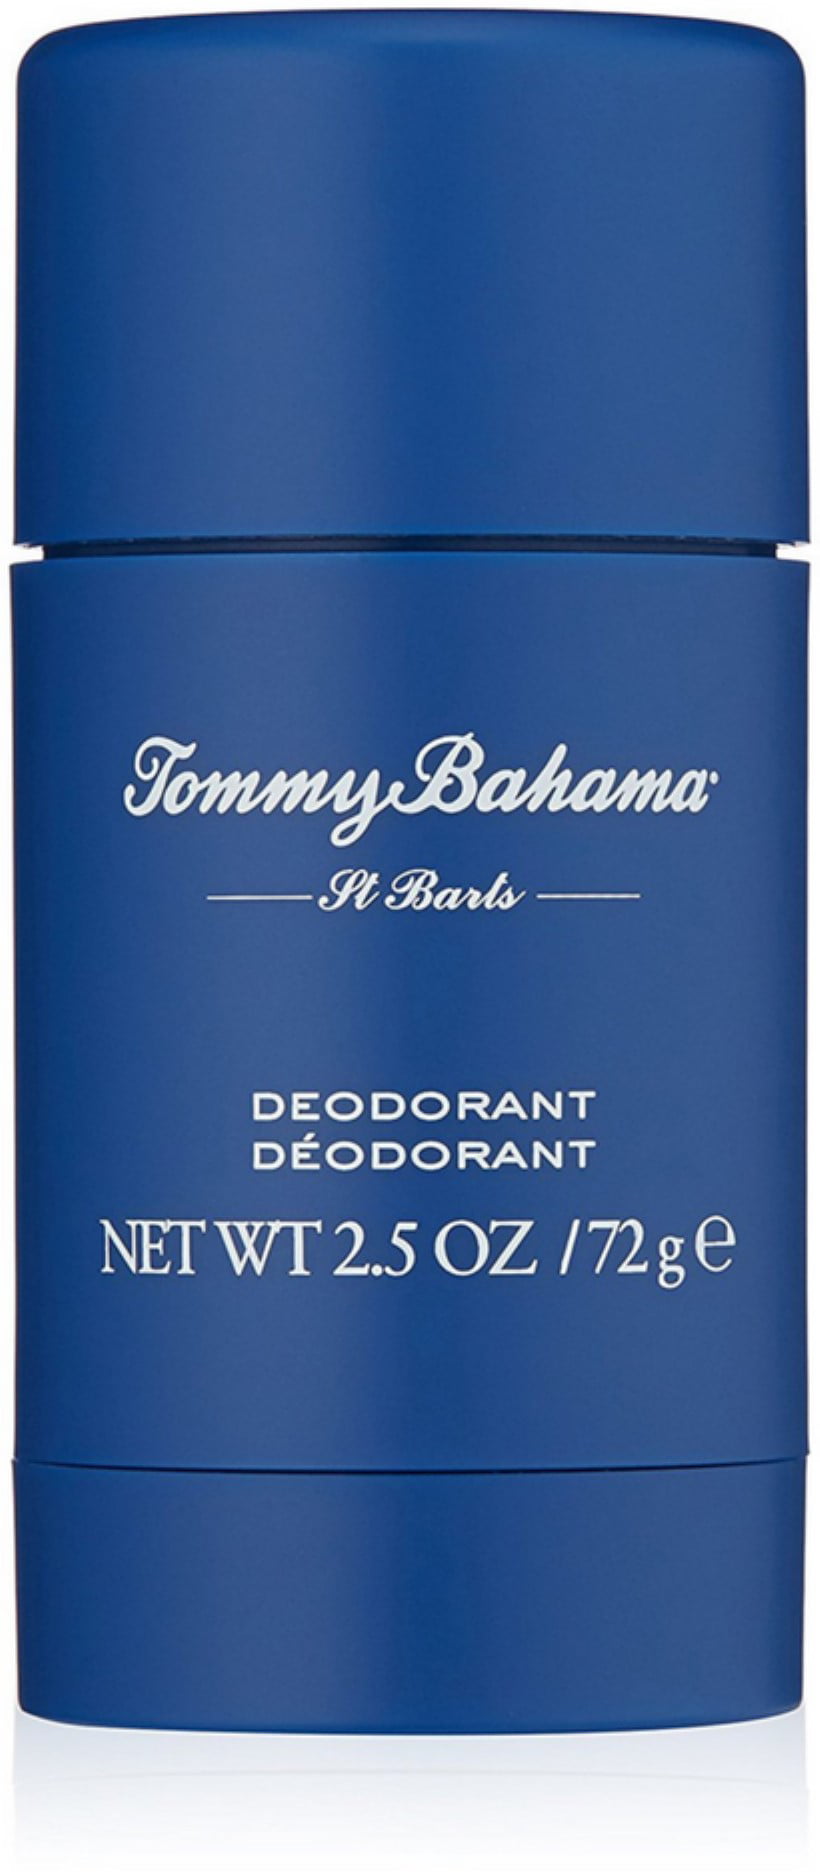 tommy bahama st barts deodorant